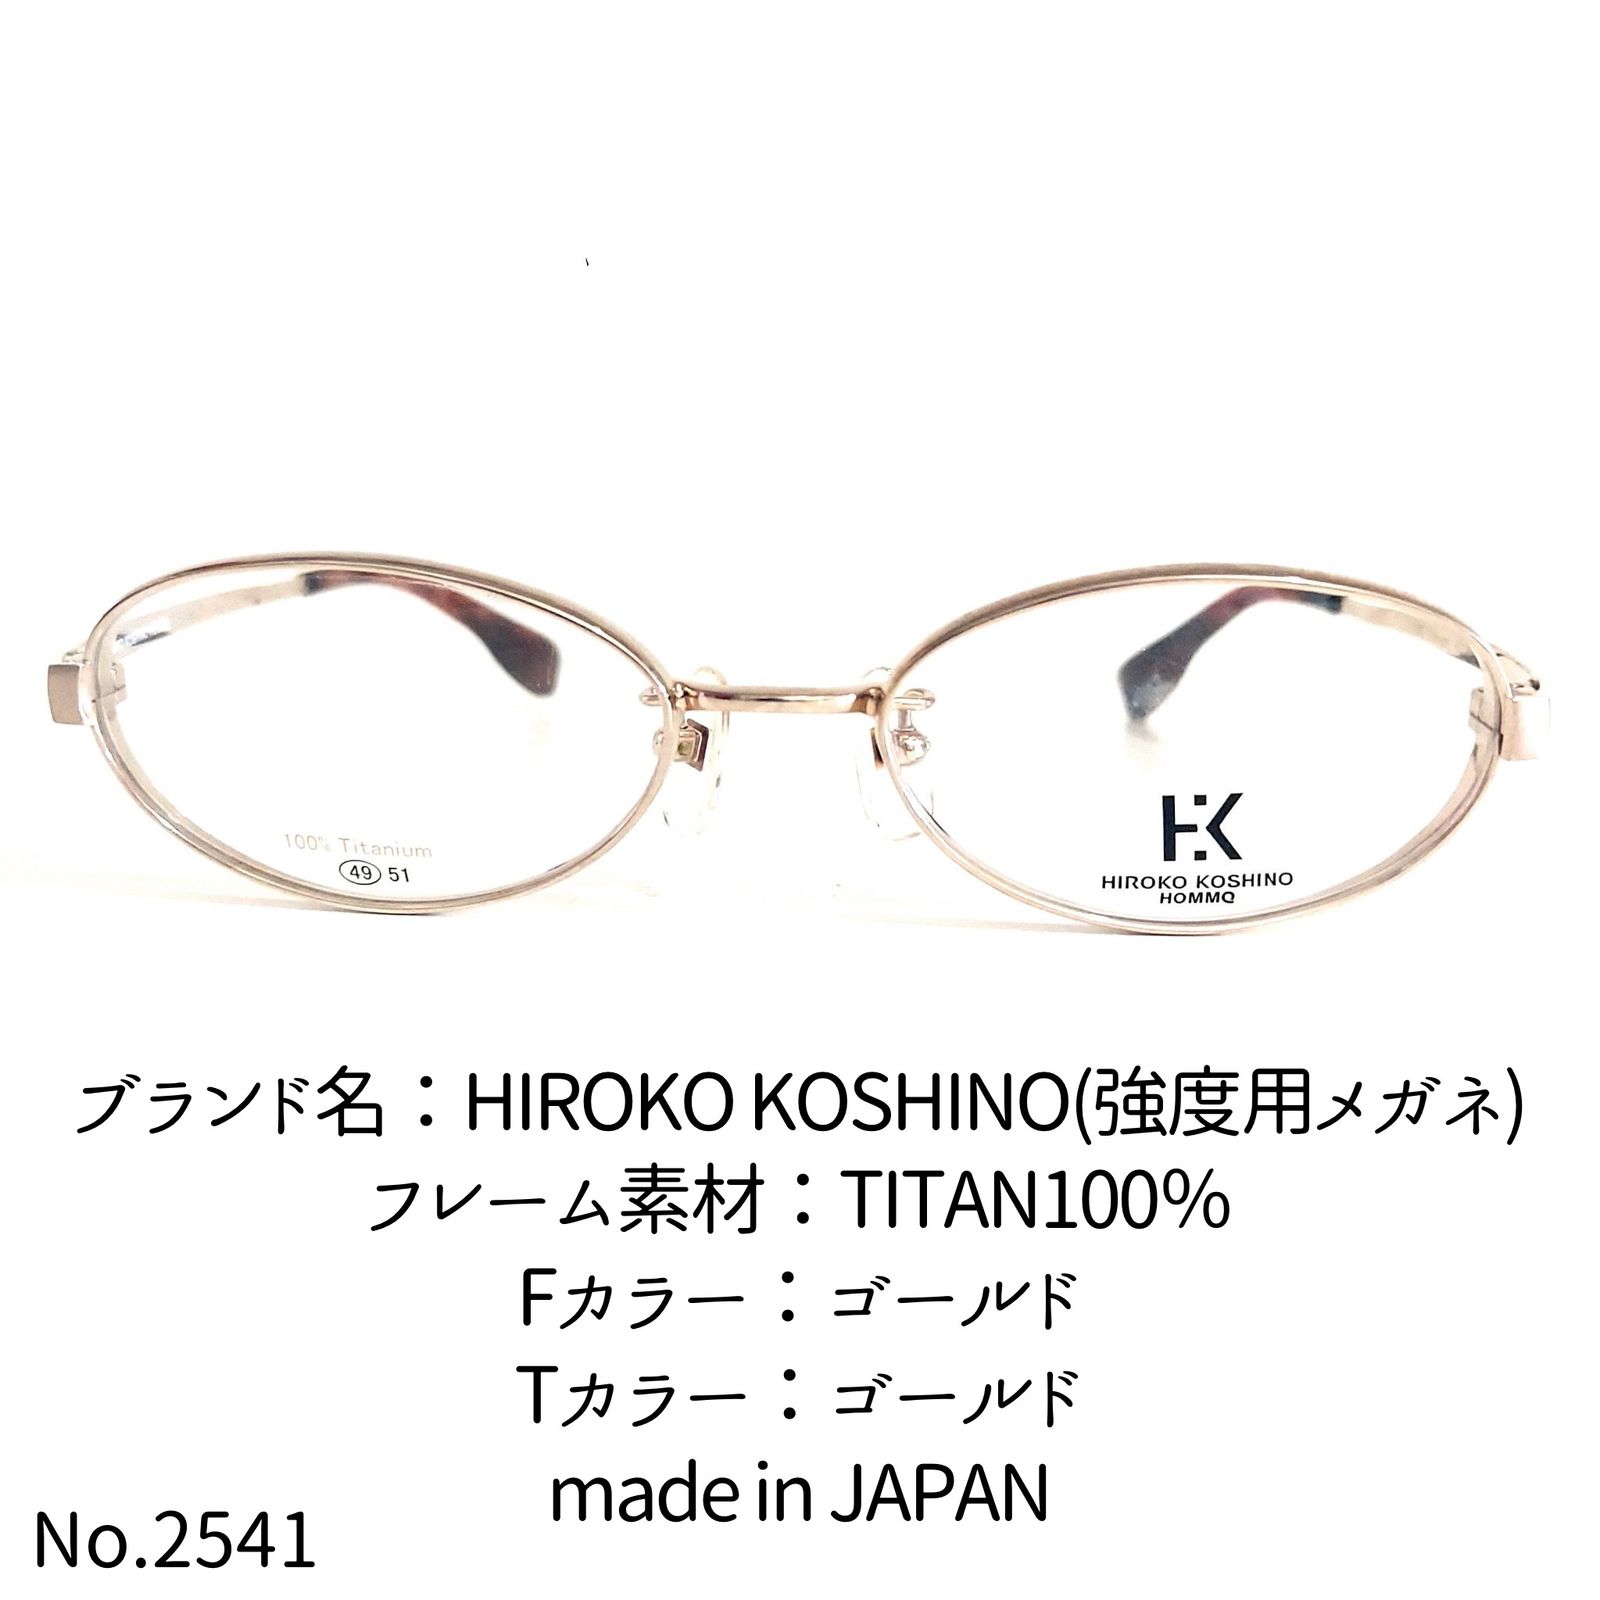 No.2541メガネ　HIROKO KOSHINO【度数入り込み価格】ダテメガネ